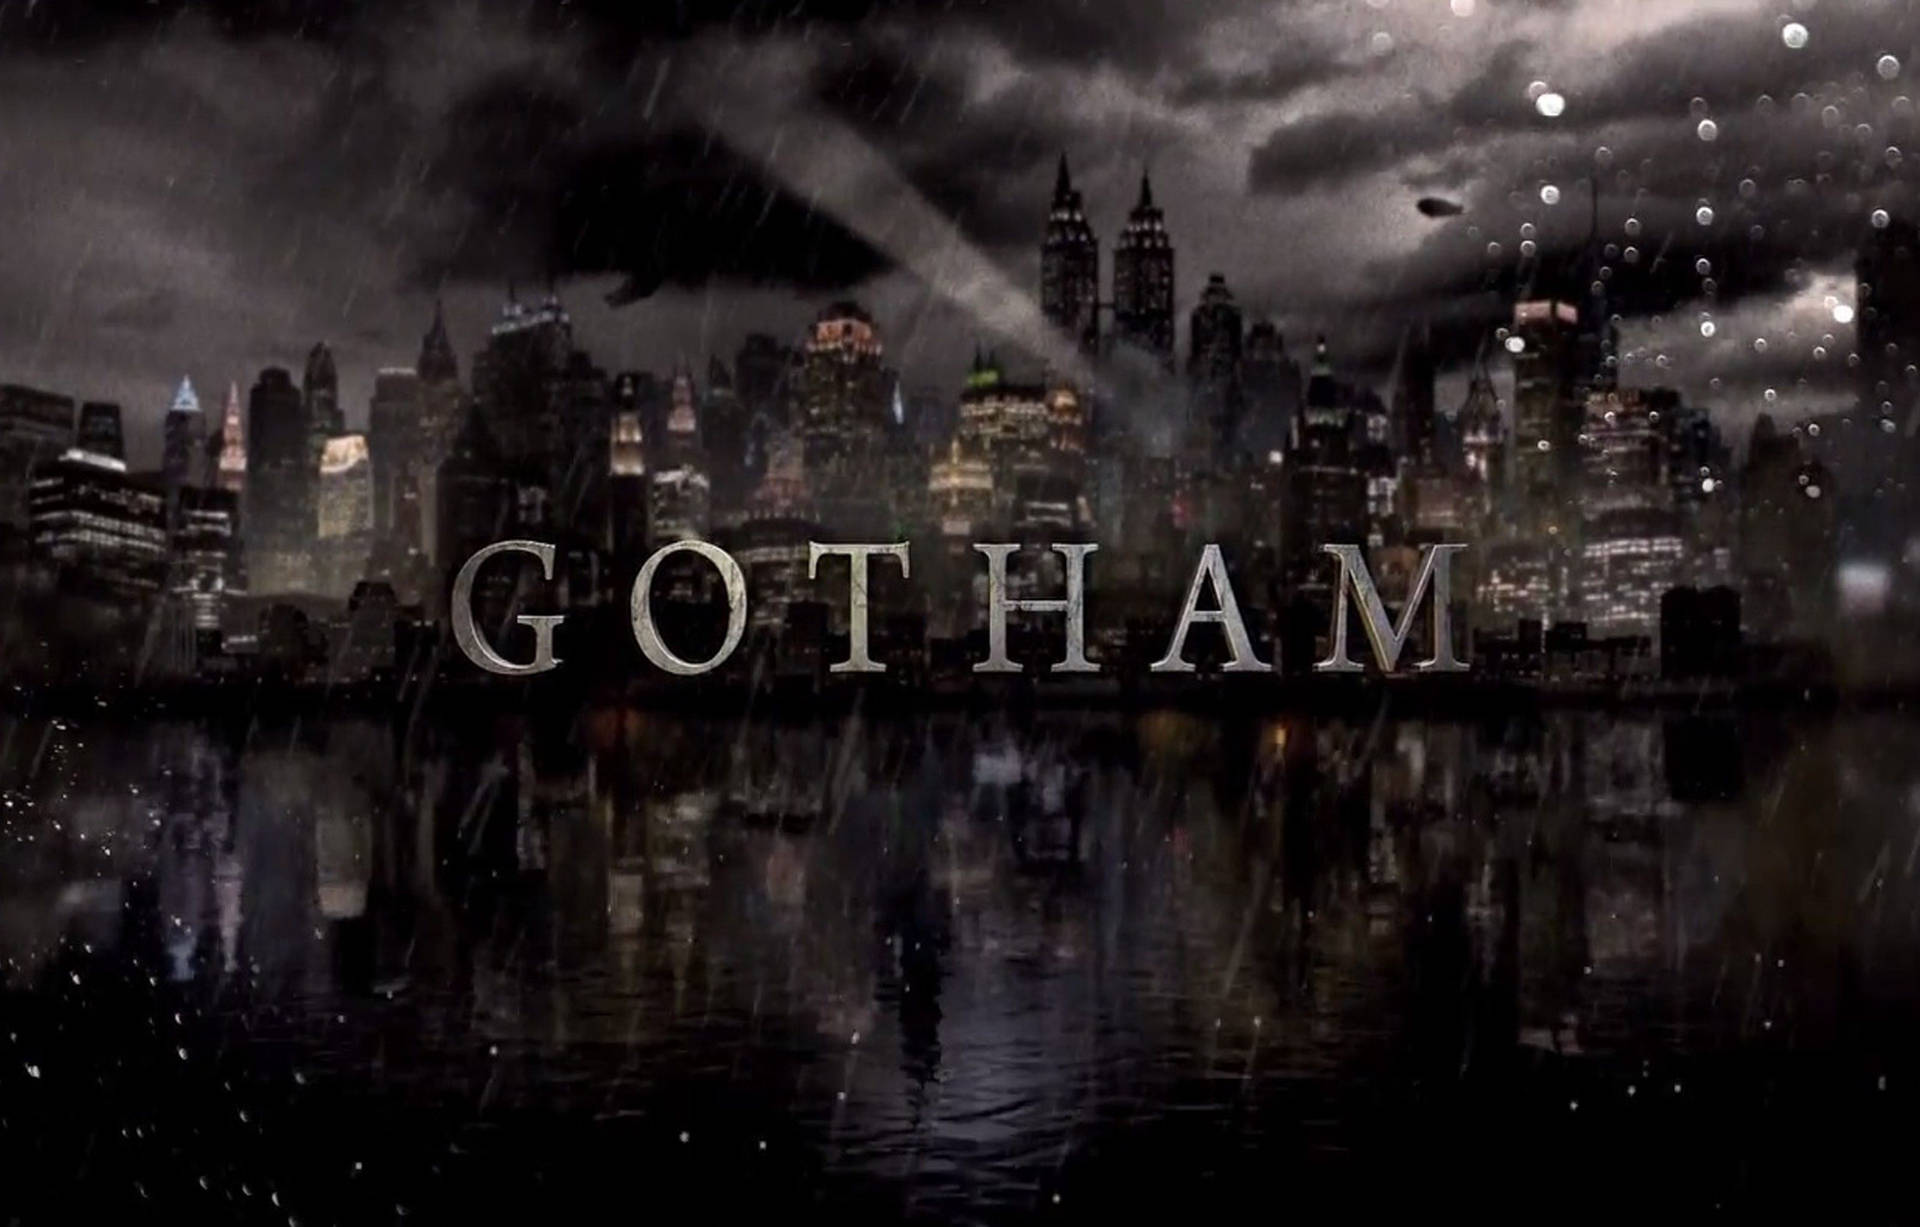 Immagini Gotham